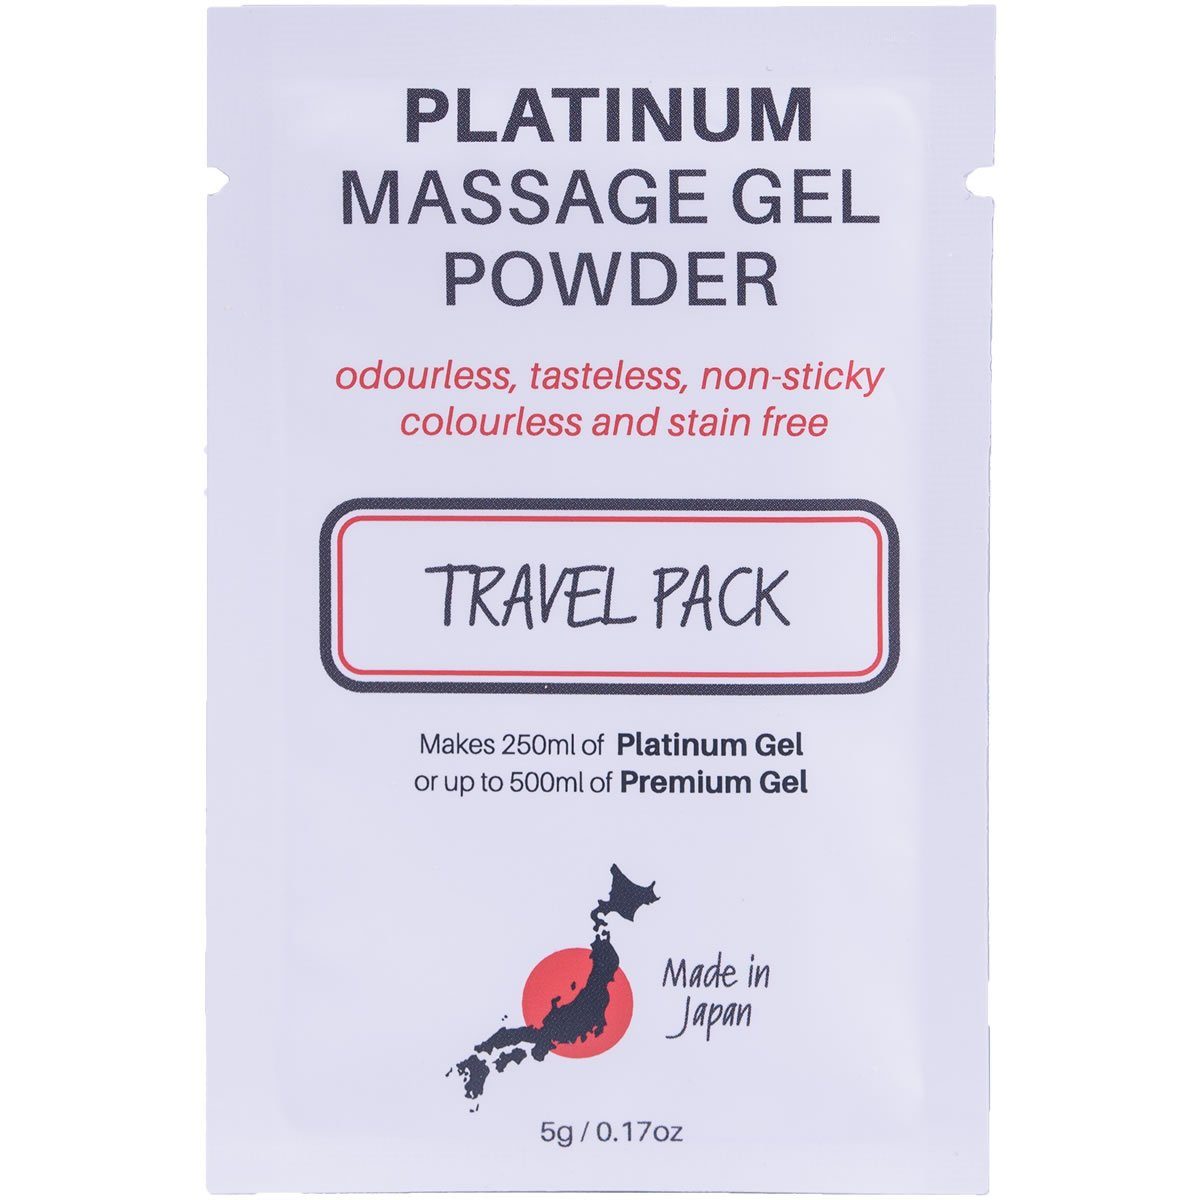 Made in Japan Gleit- und Massagegel Nuru Massage Gel Powder - Platinum, TRAVEL PACK, Sachet mit 5g, japanisches Massagegel-Pulver aus natürlichen Inhaltsstoffen